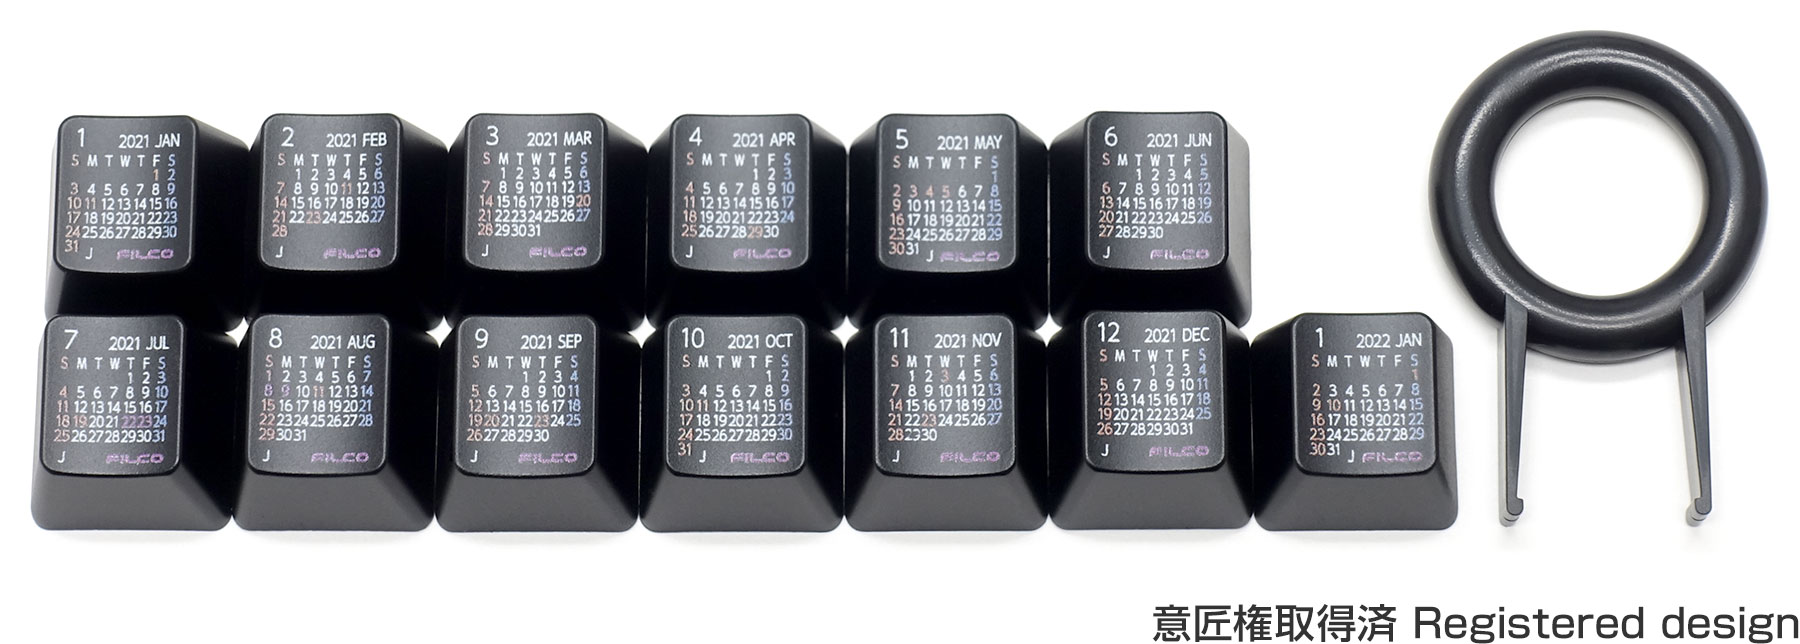 【数量限定】FILCO Calendar Keycap Set 2021 日本の祝日入り・上面印刷・ブラック